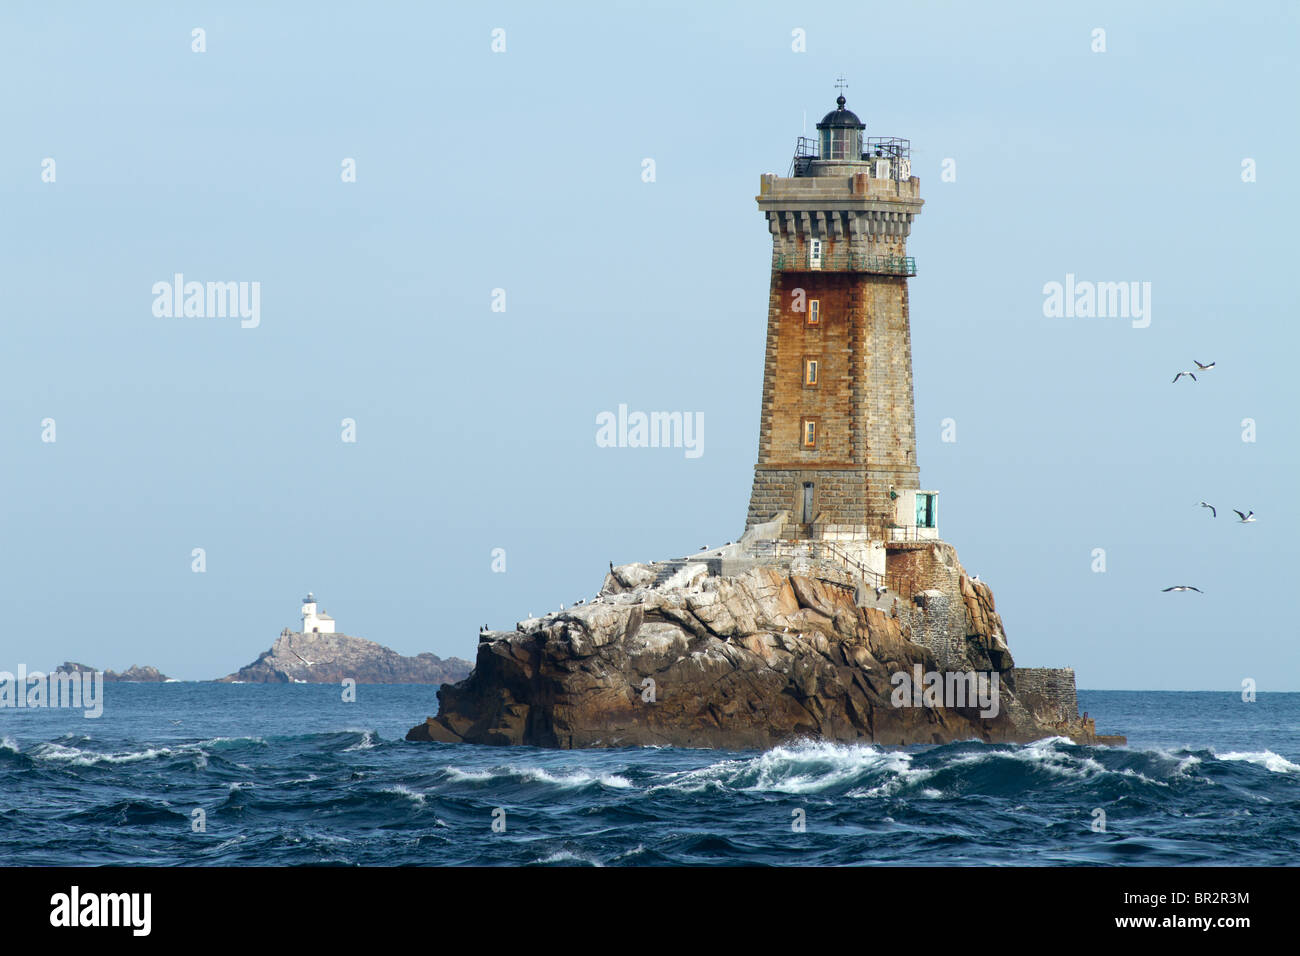 La vieille e tevennec fari in oceano Atlantico, Bretagna, Francia, nei pressi di Pointe du Raz Foto Stock